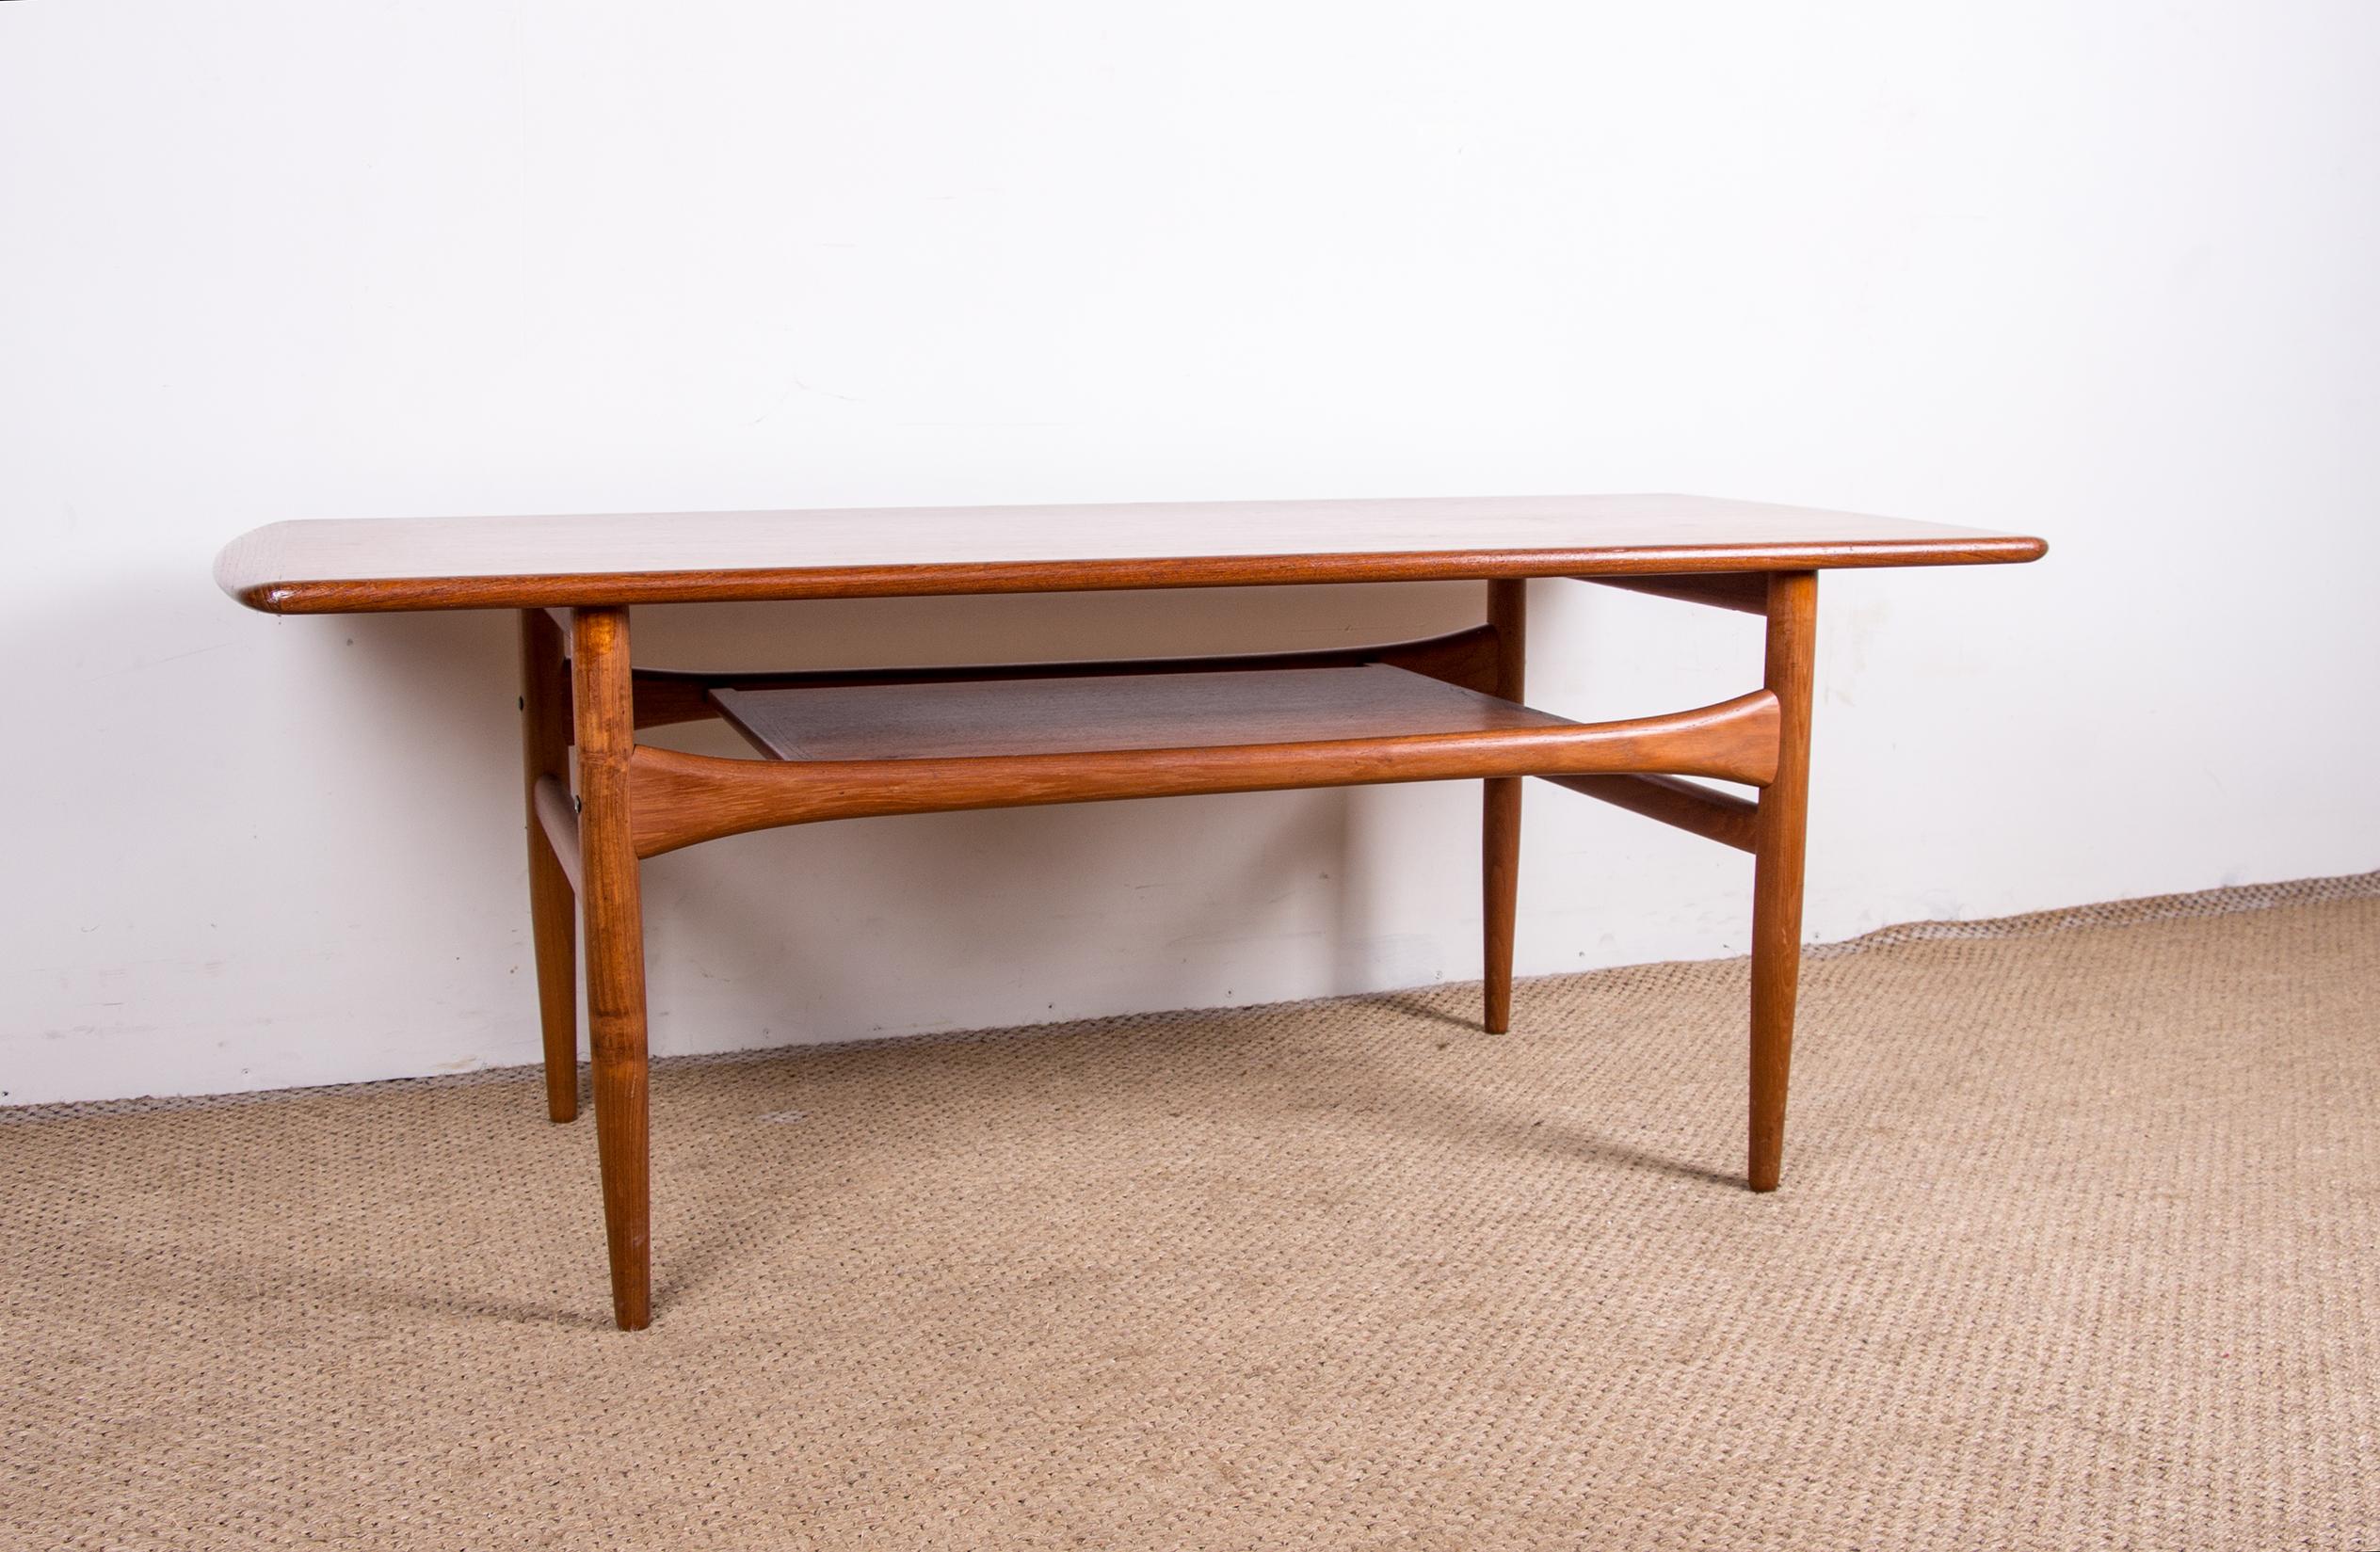 Magnifique table basse scandinave. Elle dispose d'un niveau inférieur en bois pour plus d'espace de rangement. Design/One très élégant, pieds fuselés, plateau incurvé sur toute la largeur. Très bonne qualité de fabrication.